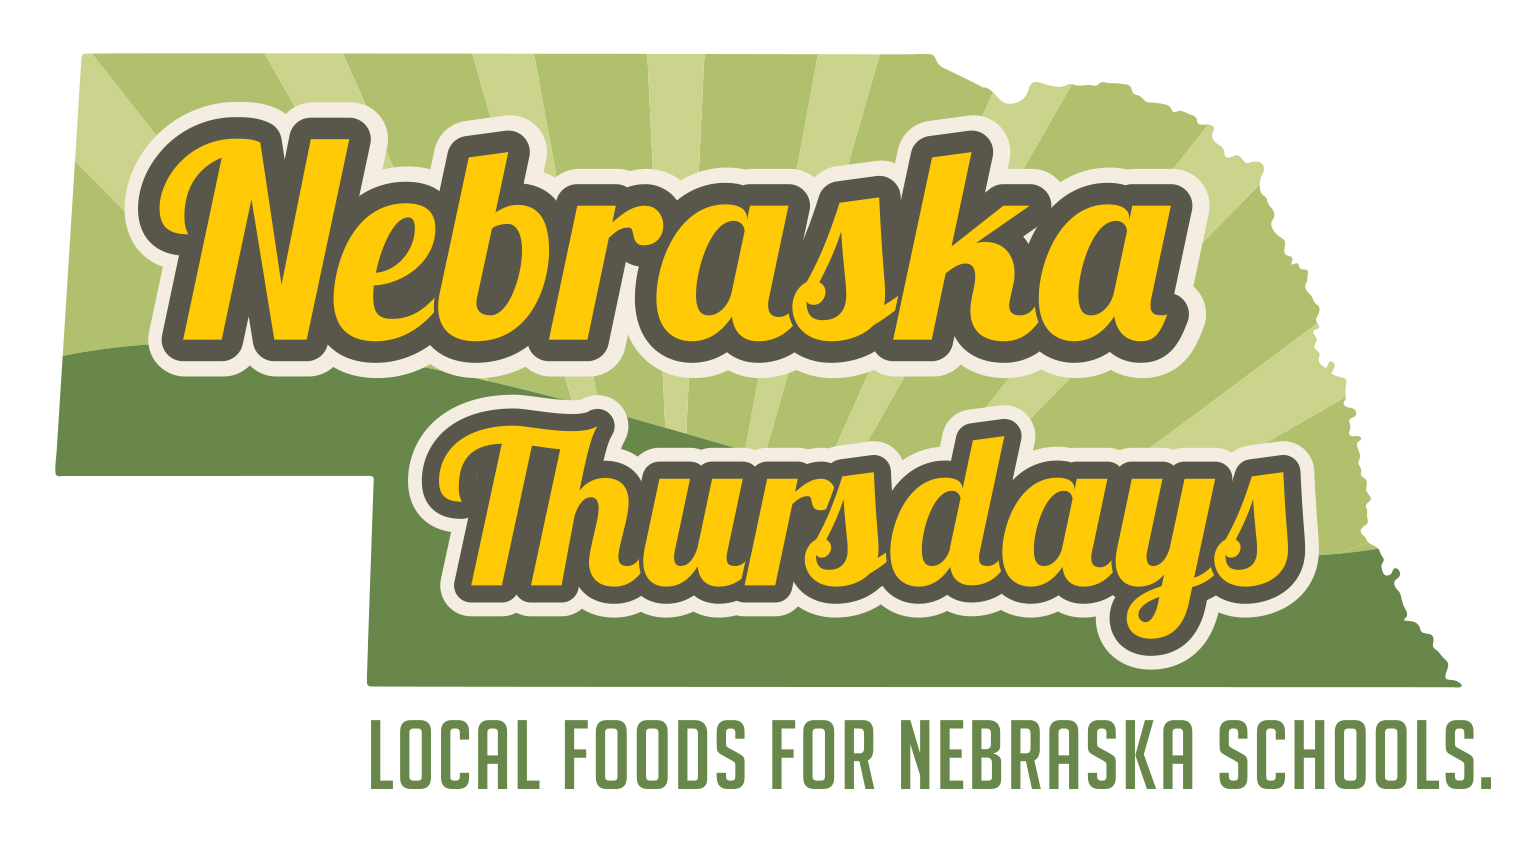 Logotip dels dijous de Nebraska